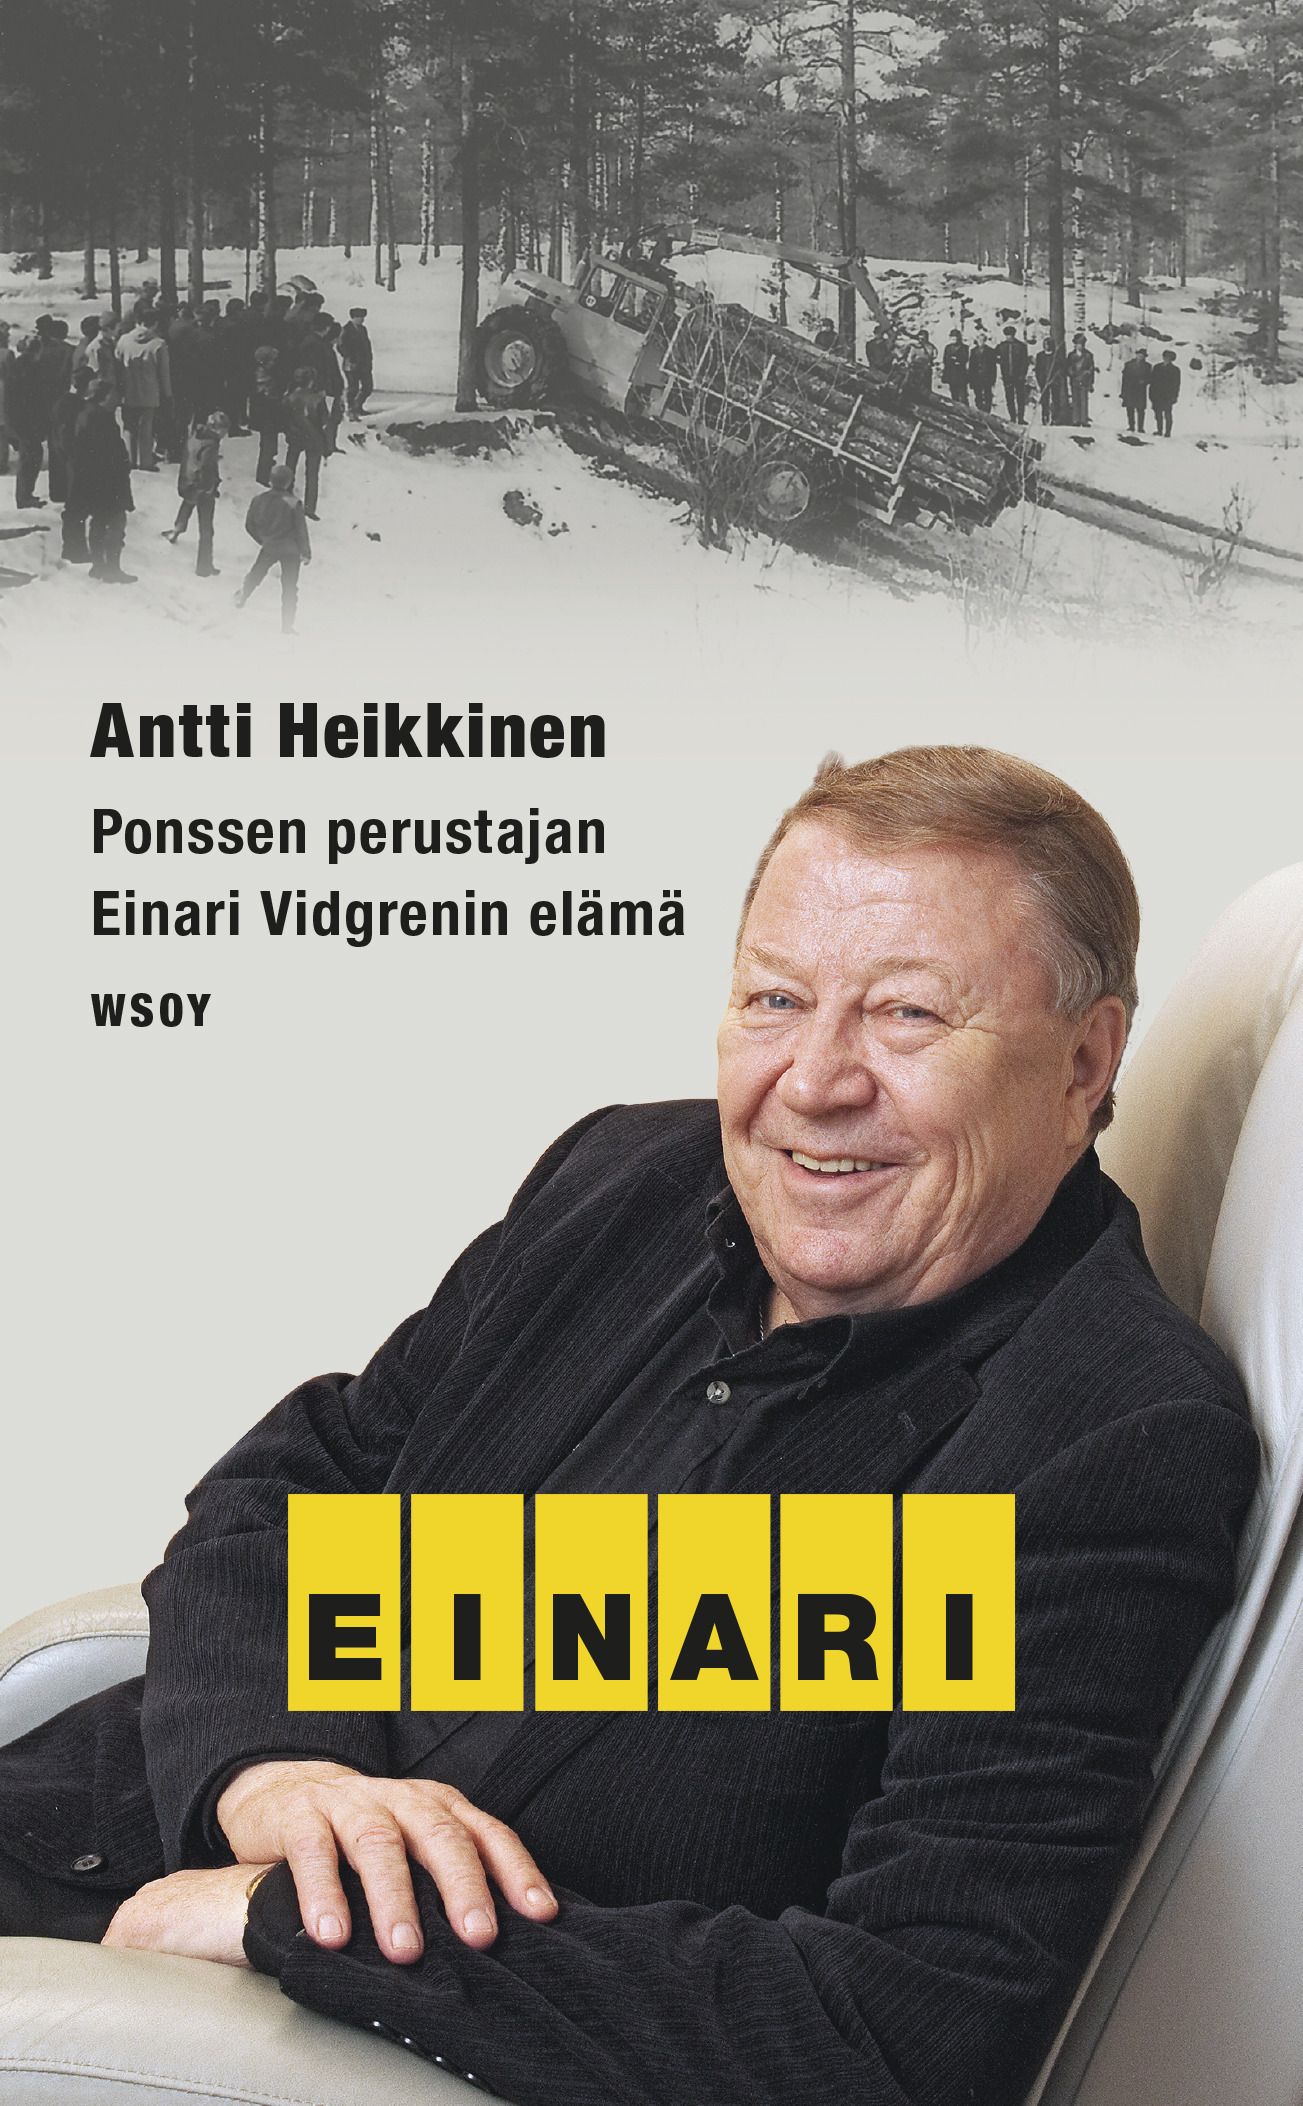 Antti Heikkinen : Einari